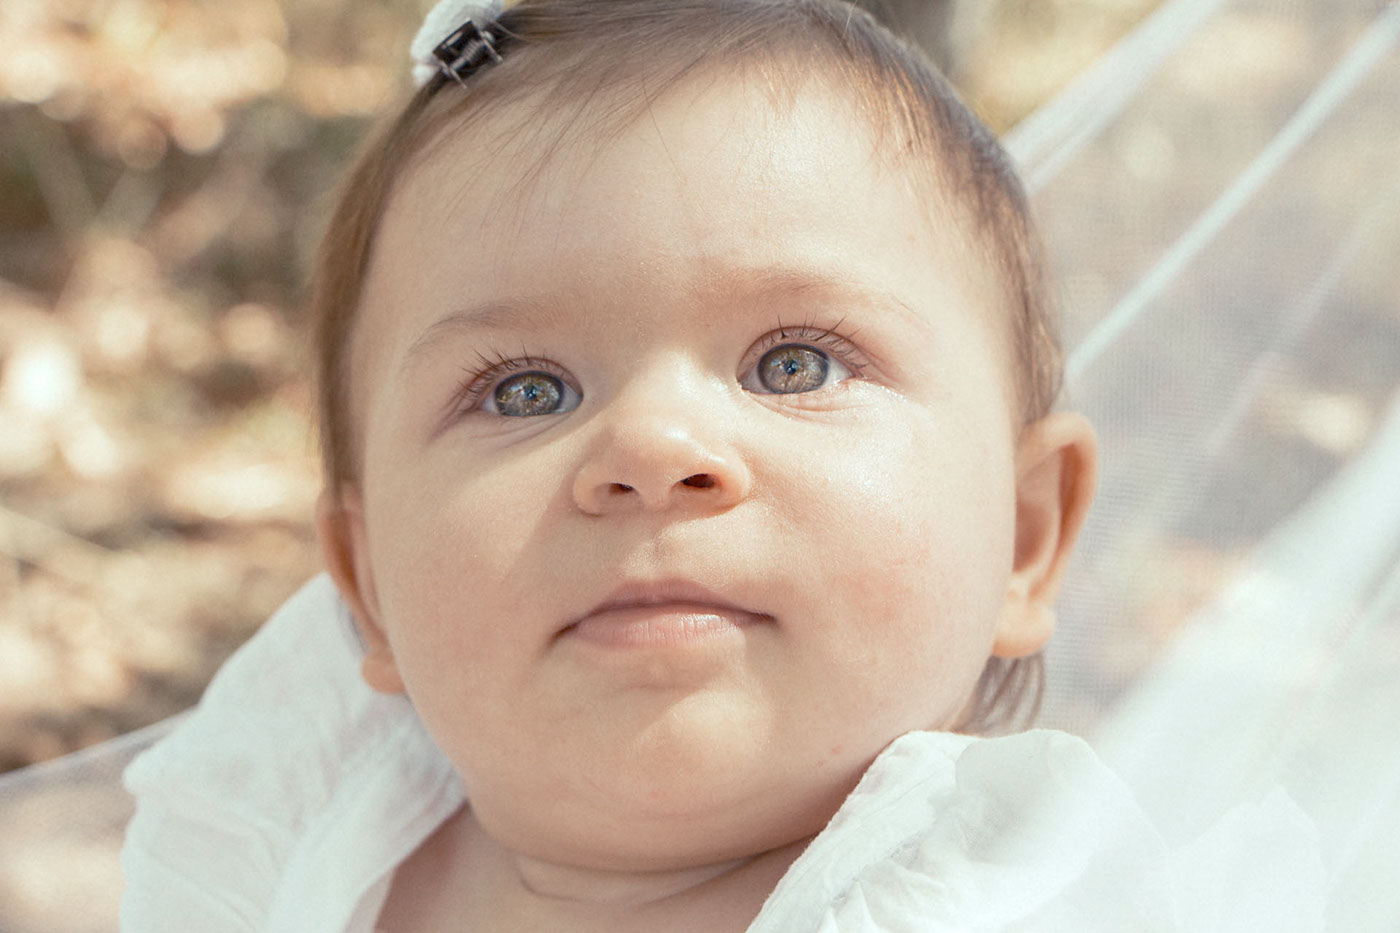 baby baby photography photo Vânia Viana V23:32V Beautiful girl Sun summer